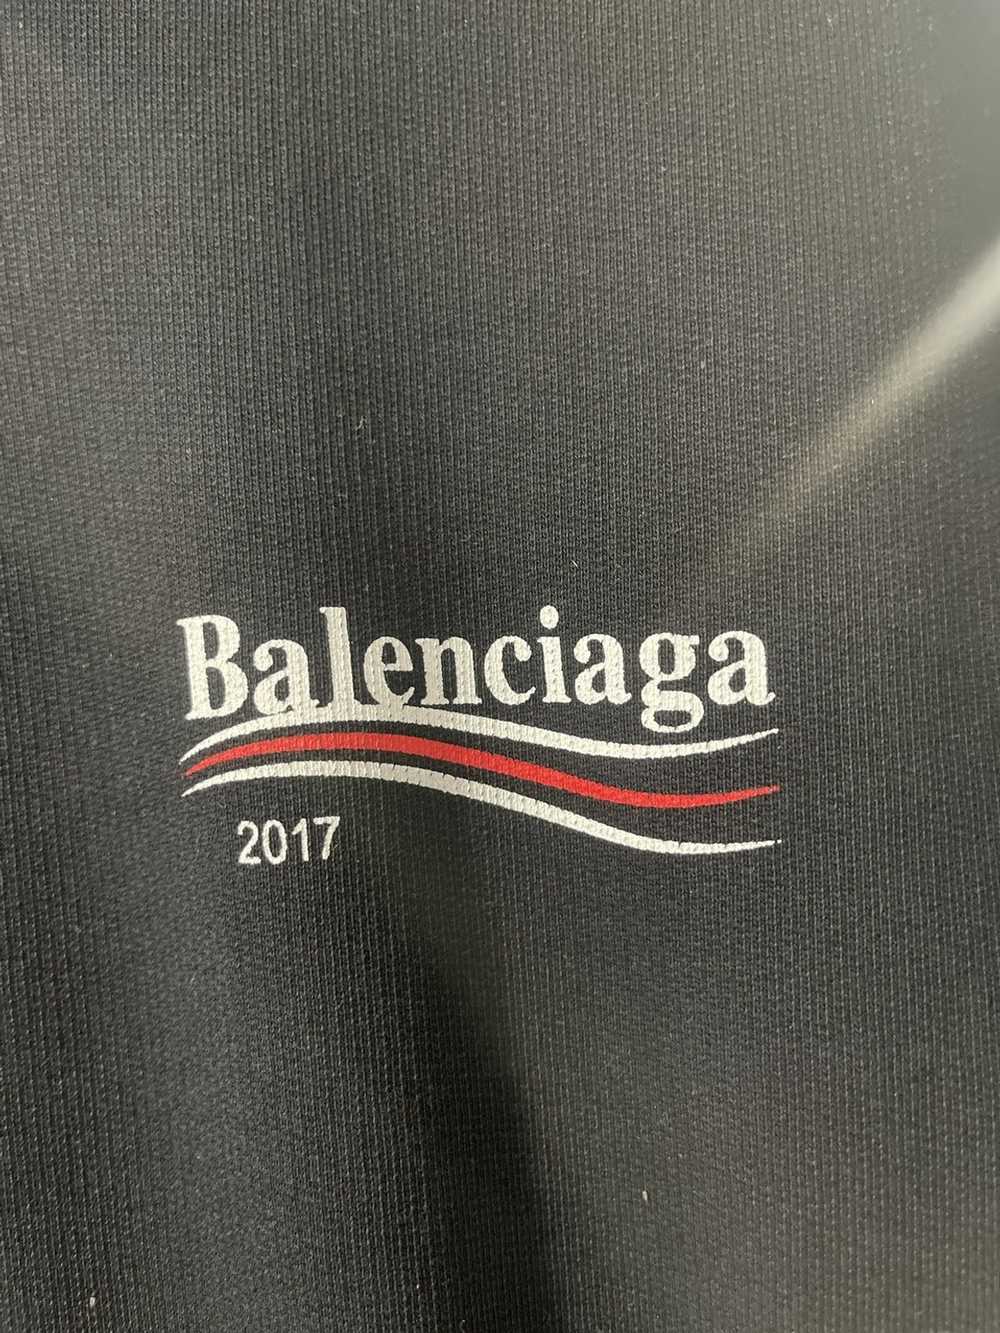 Balenciaga Balenciaga Campaign hoodie 2017 - image 6